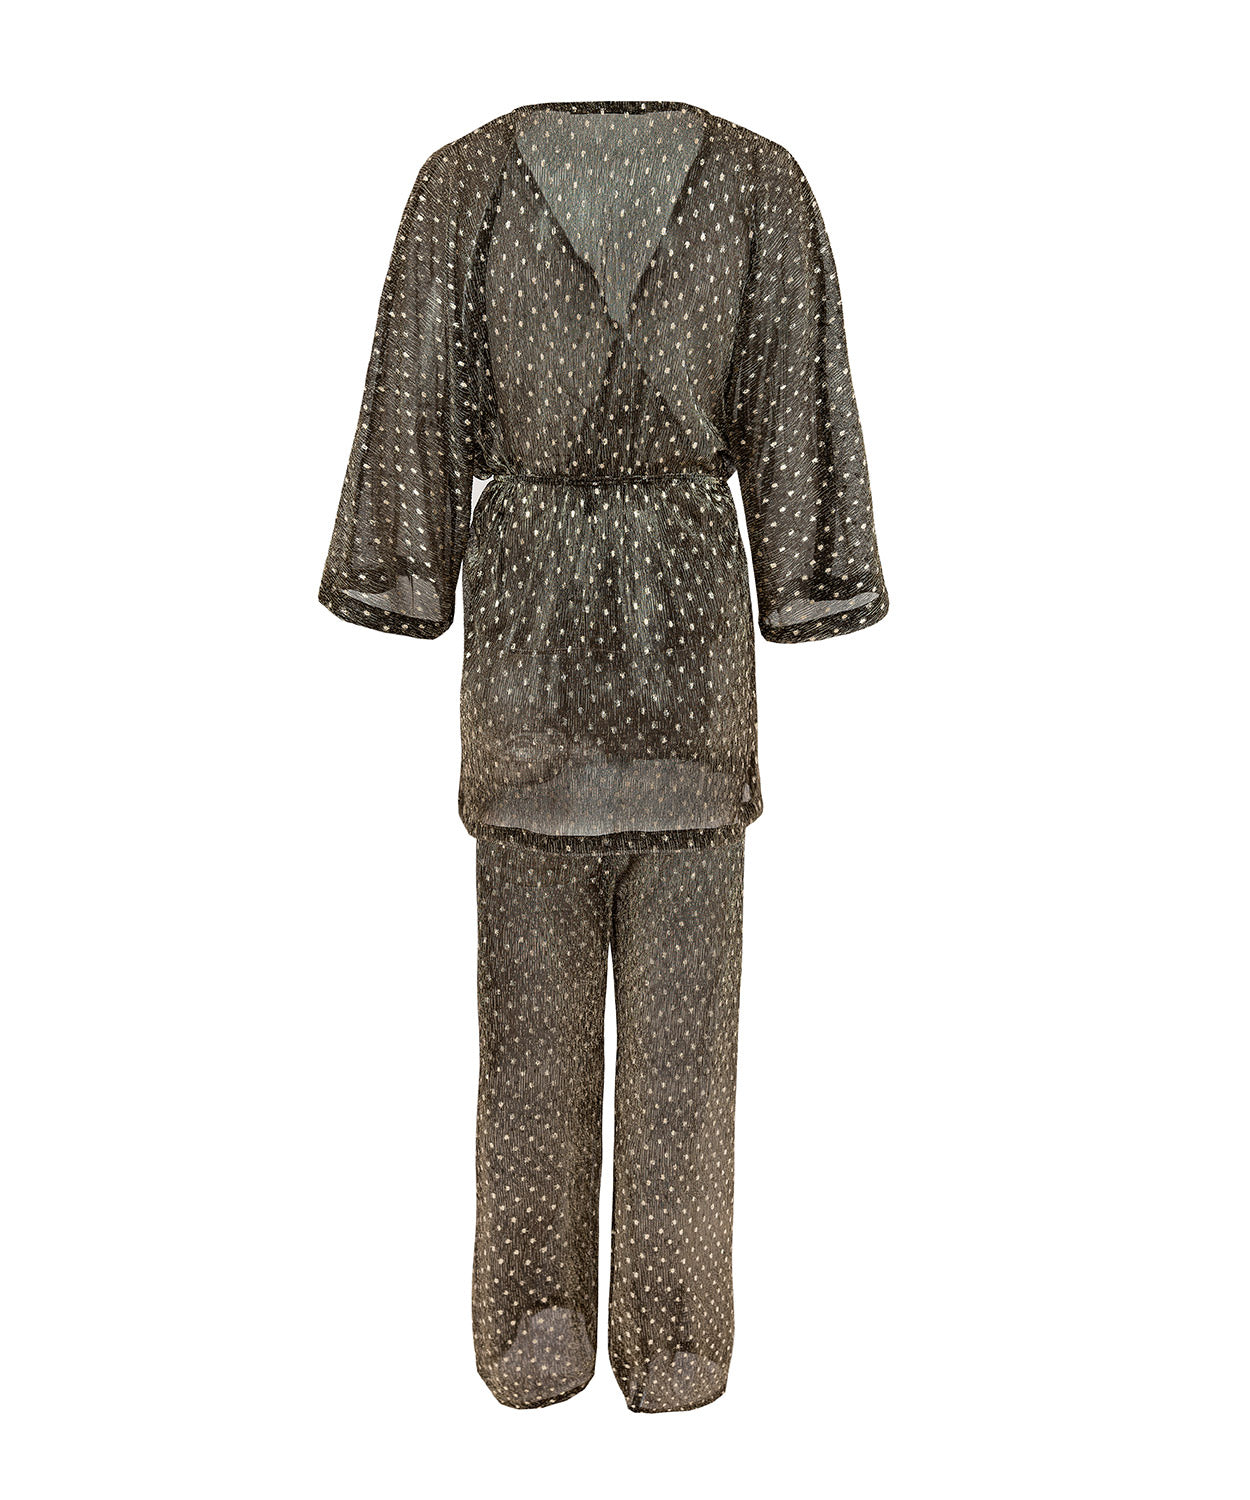 Плажен комплект халат и панталон AGATA в черно-златист цвят